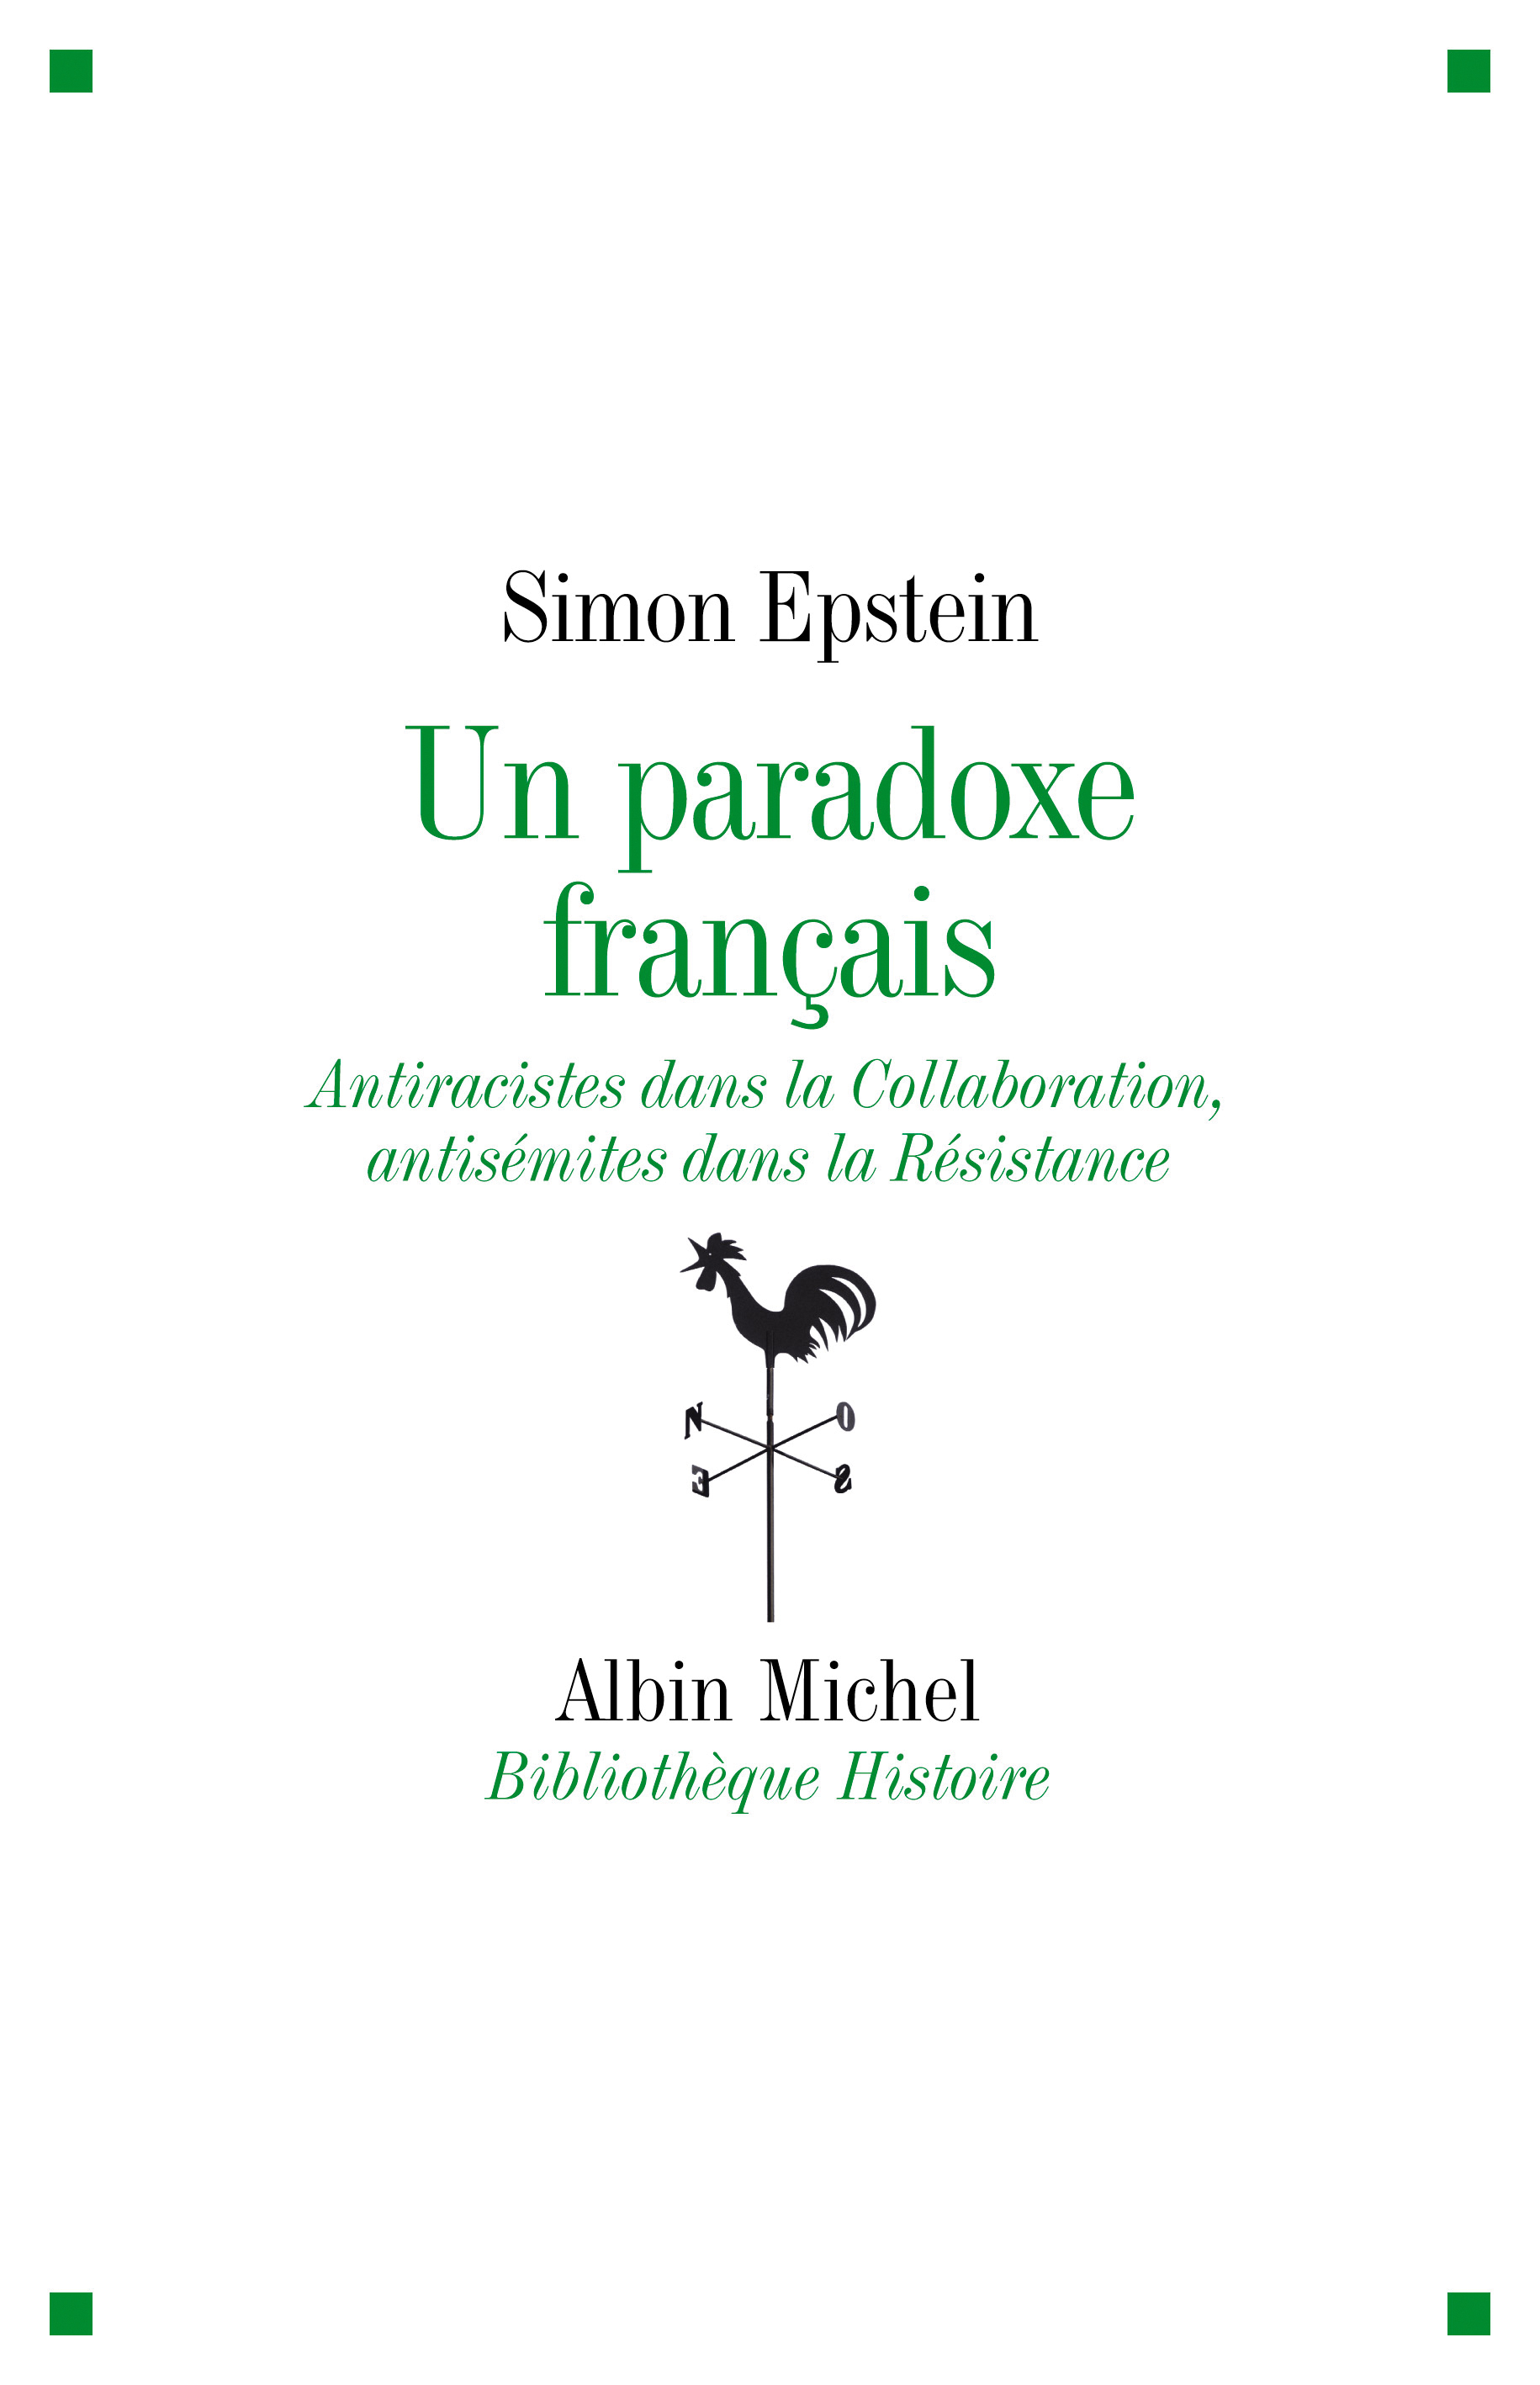 Couverture du livre Un paradoxe français